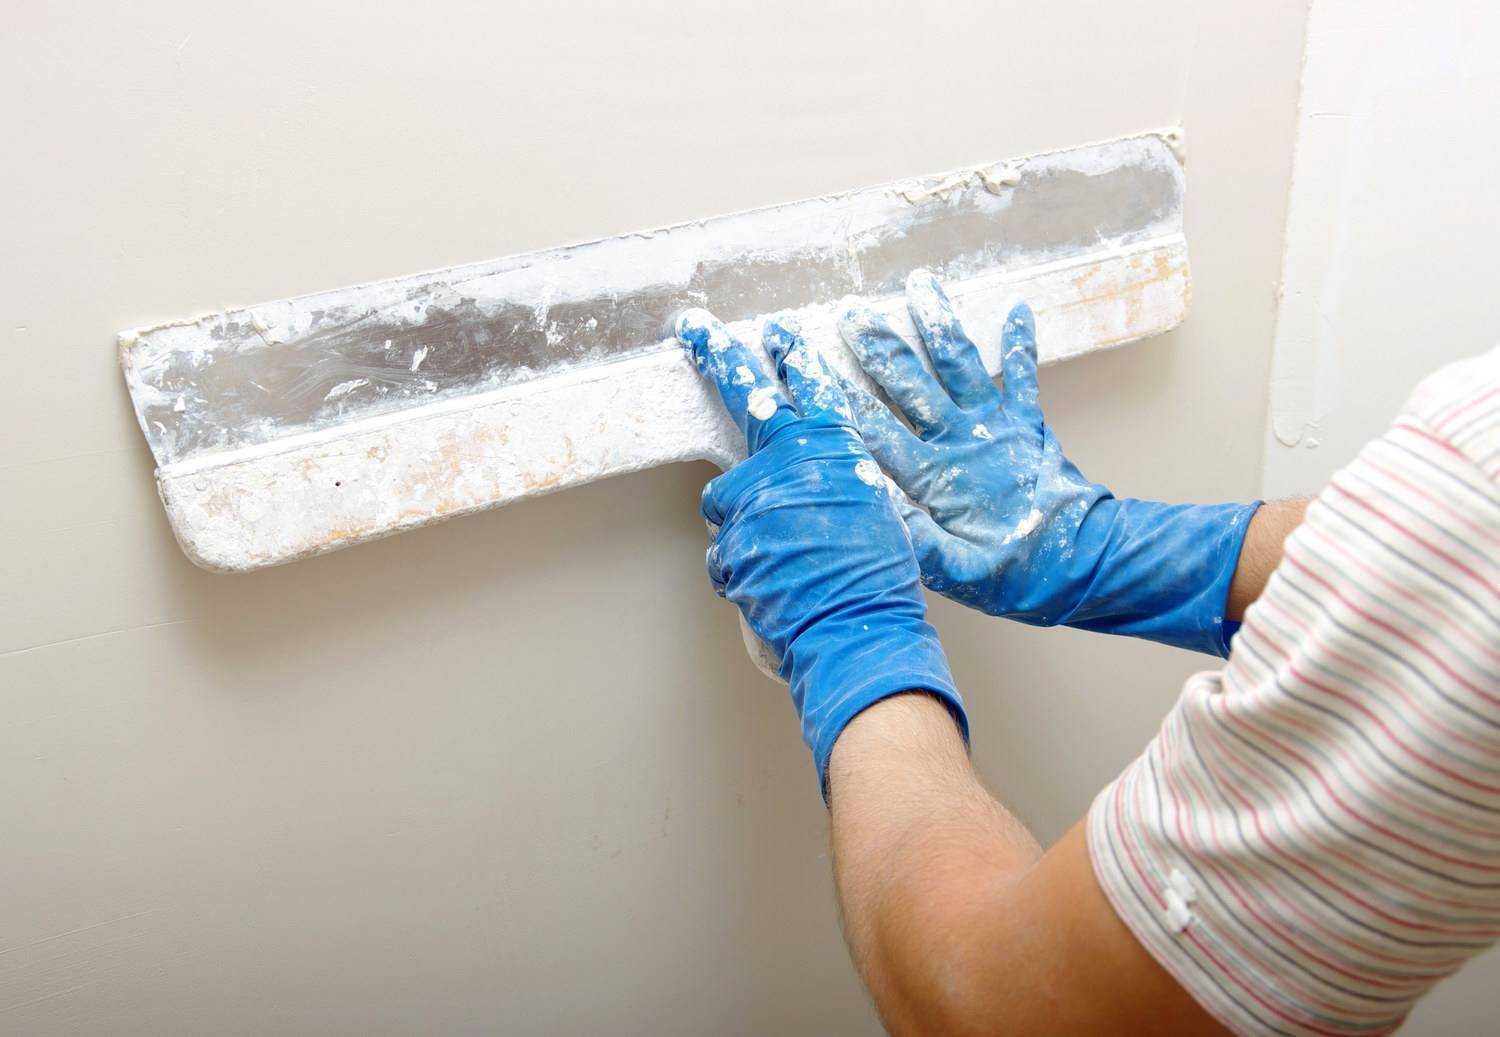 Шпаклевка стен под покраску: как правильно шпаклевать и нужно ли грунтовать, как выбрать смесь для гипсокартона